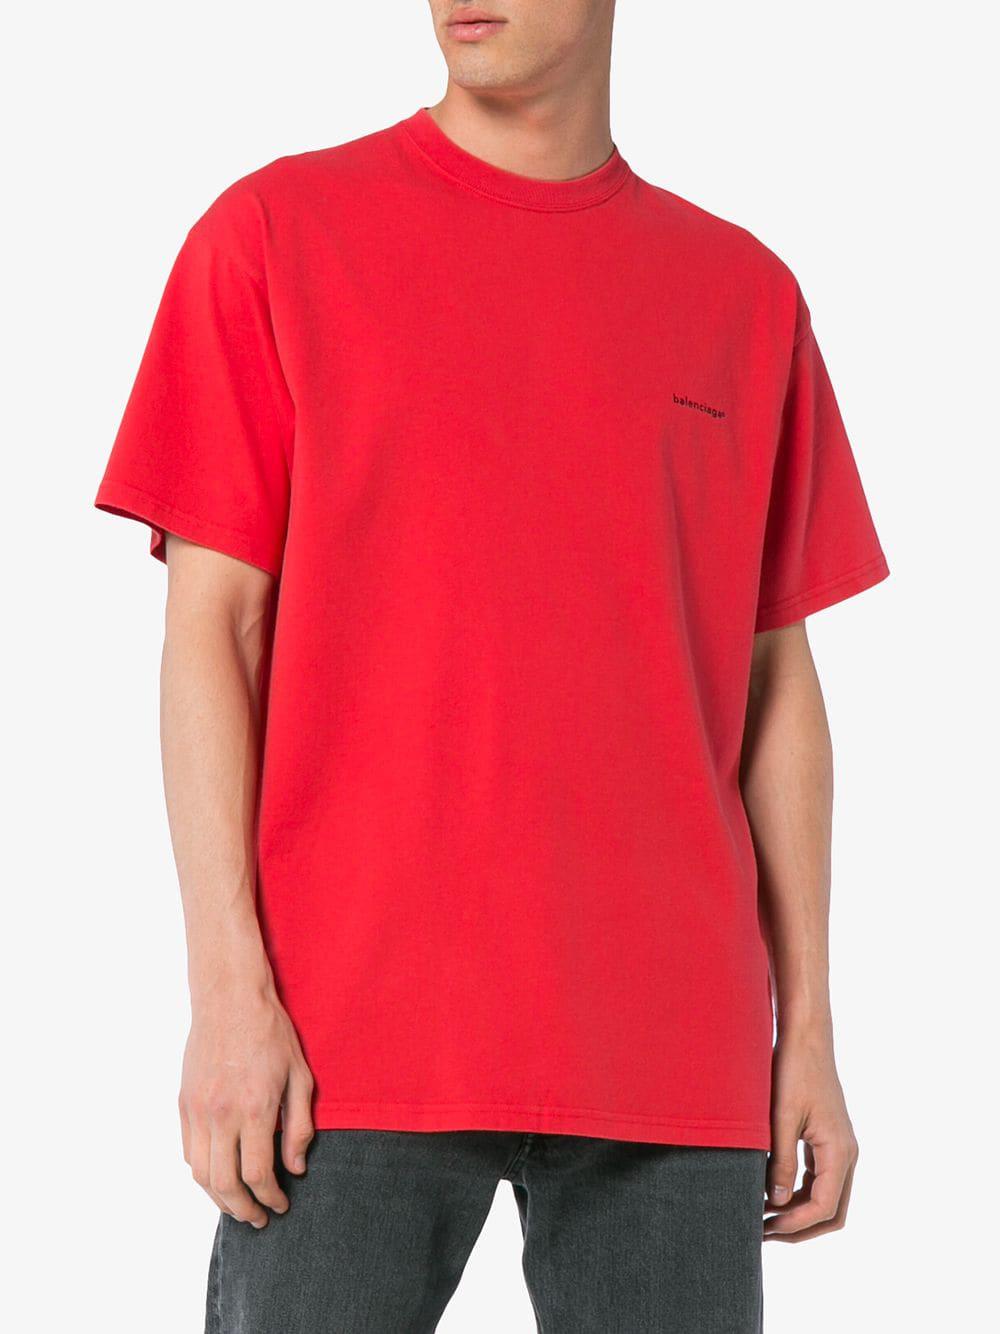 balenciaga red tshirt